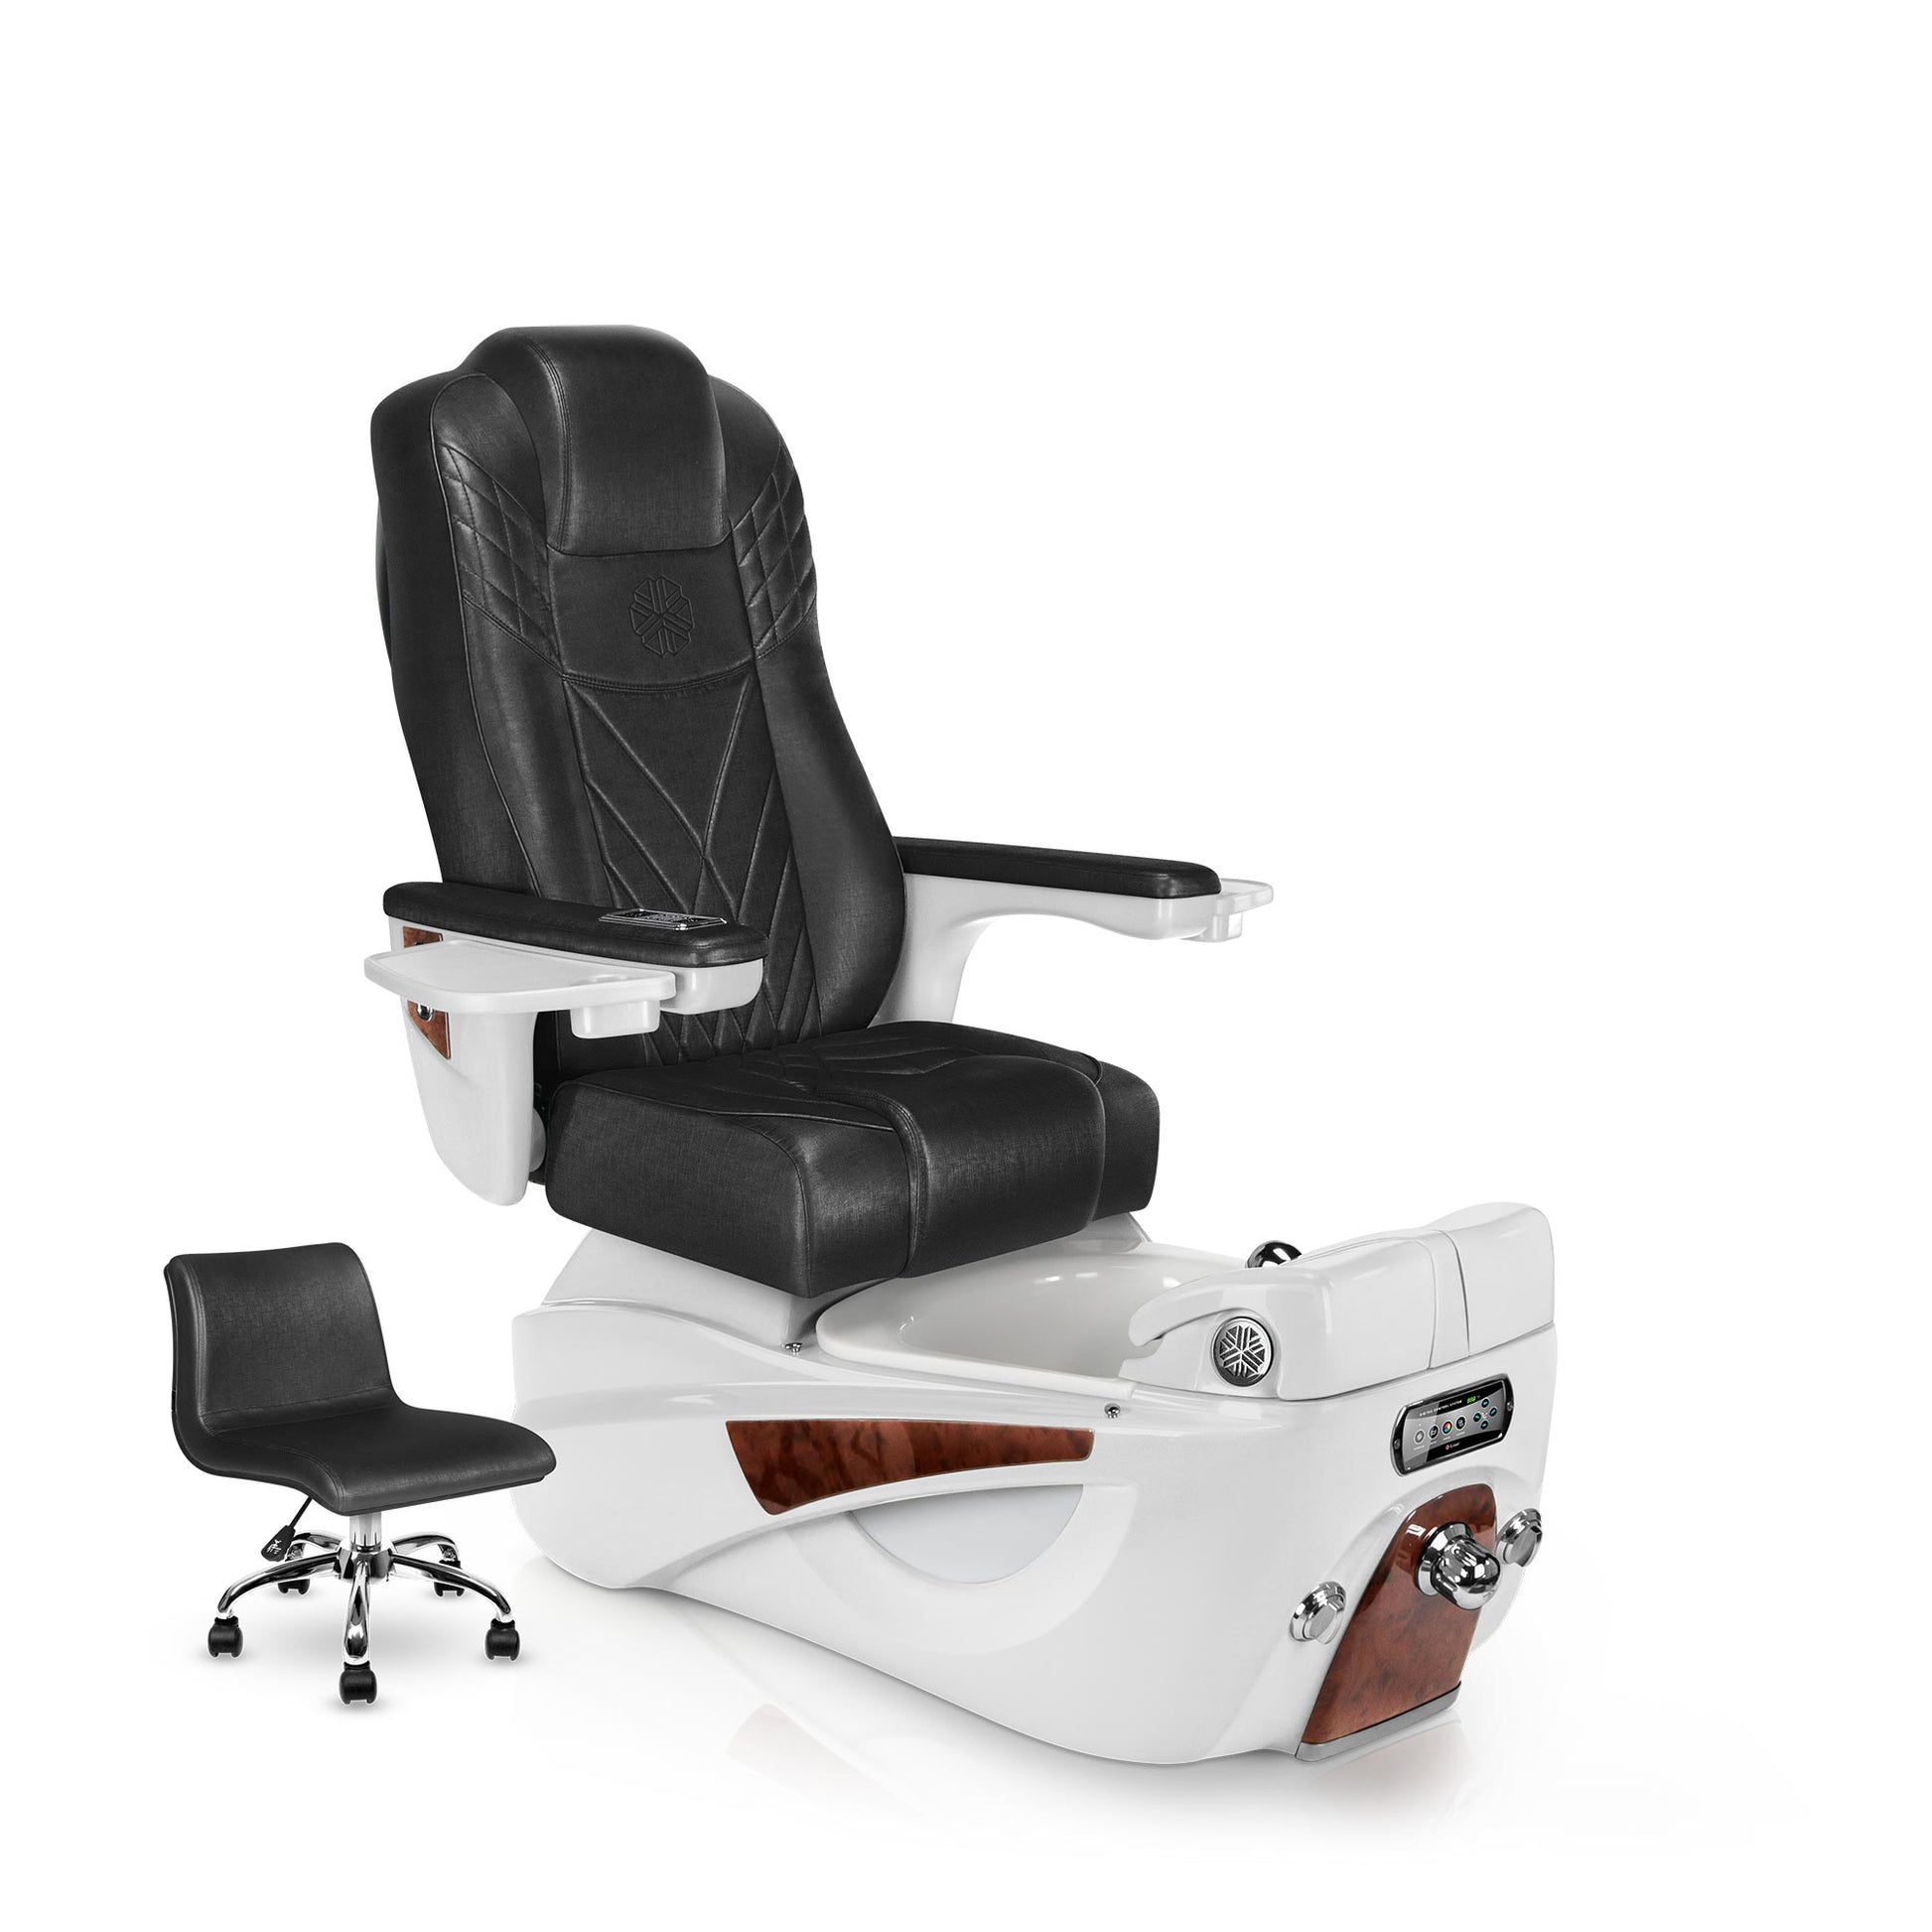 Lexor LUMINOUS pedicure chair with noir cushion and white pearl spa base